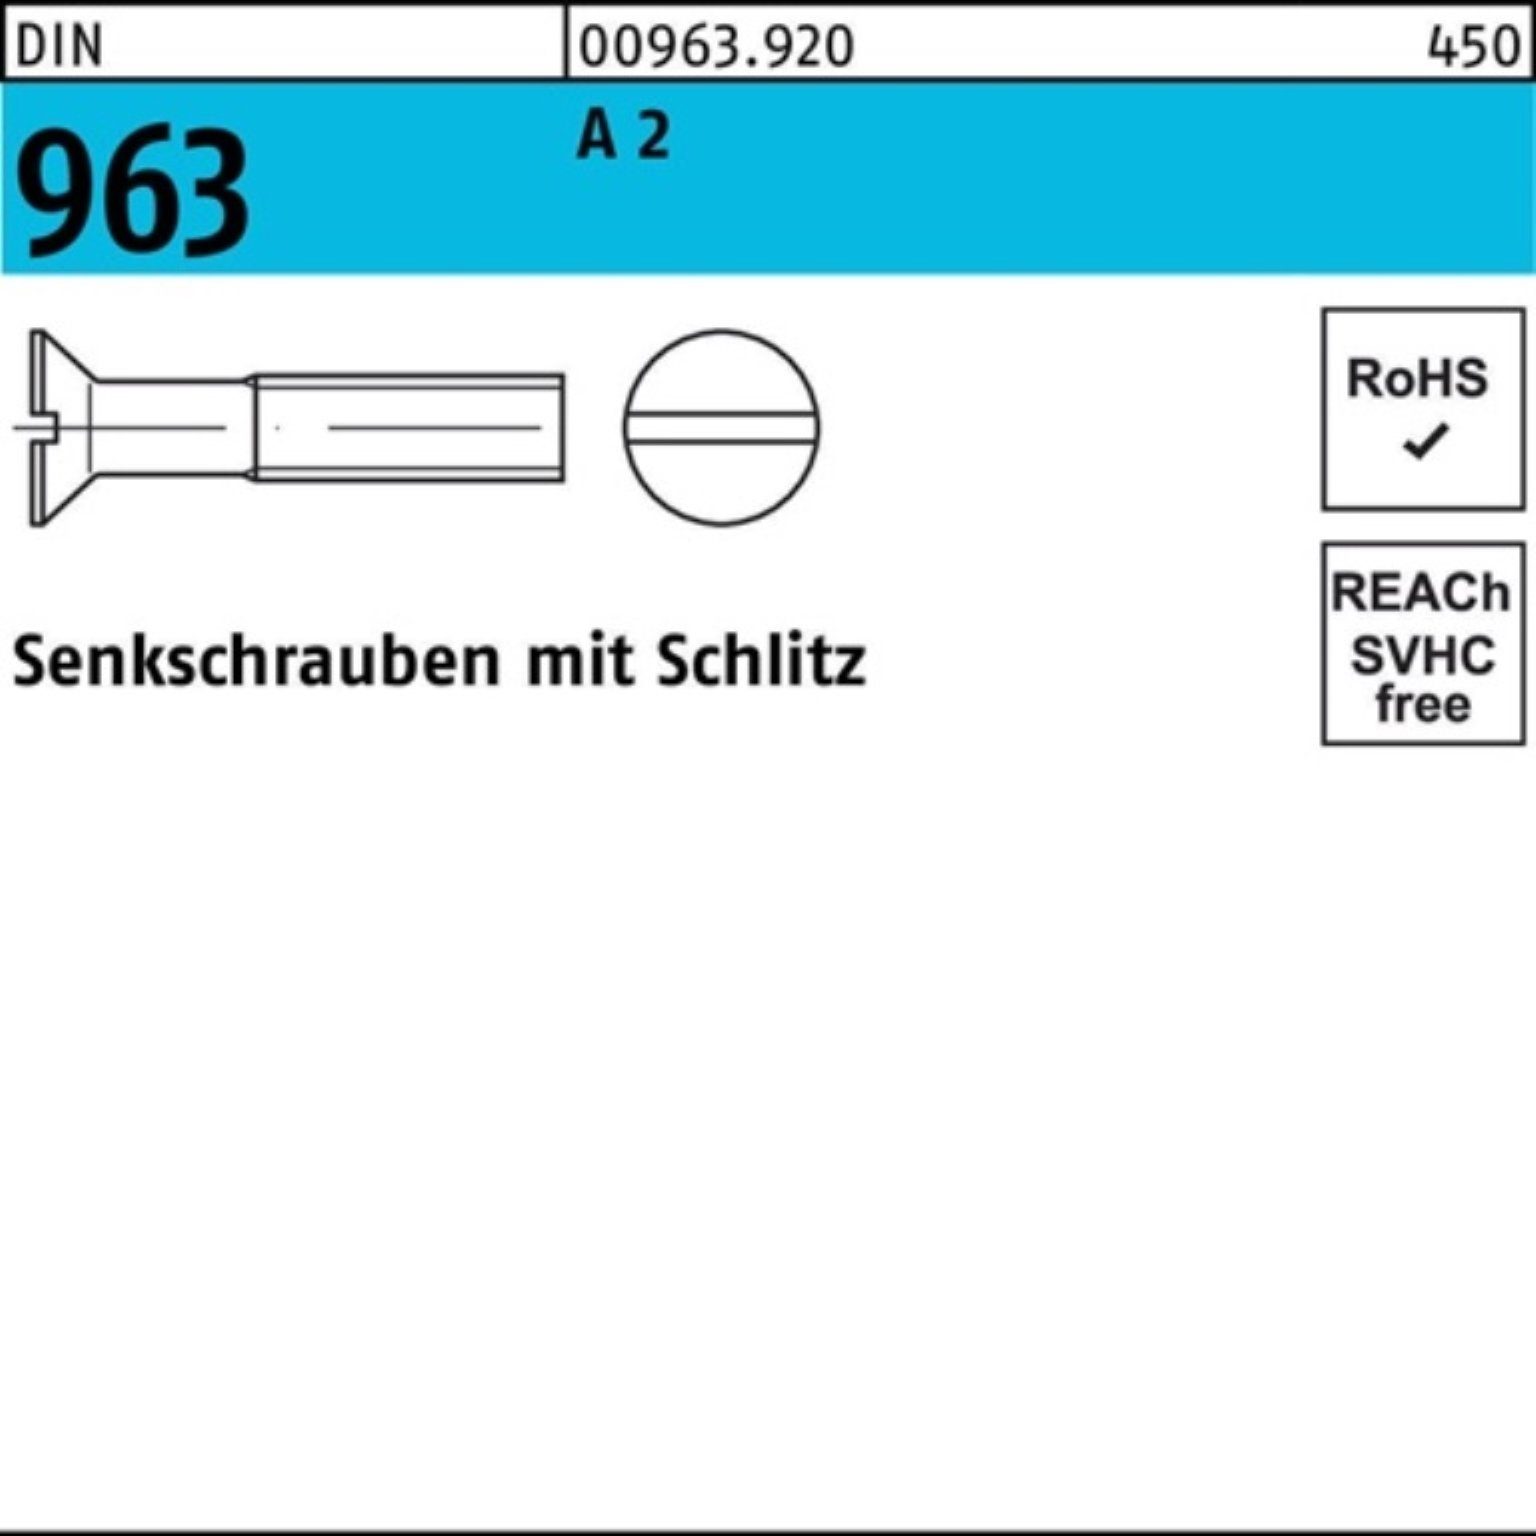 Senkschraube M6x Pack 2 Stück Schlitz Reyher DIN Senkschraube 963 DIN 100 45 963 100er A